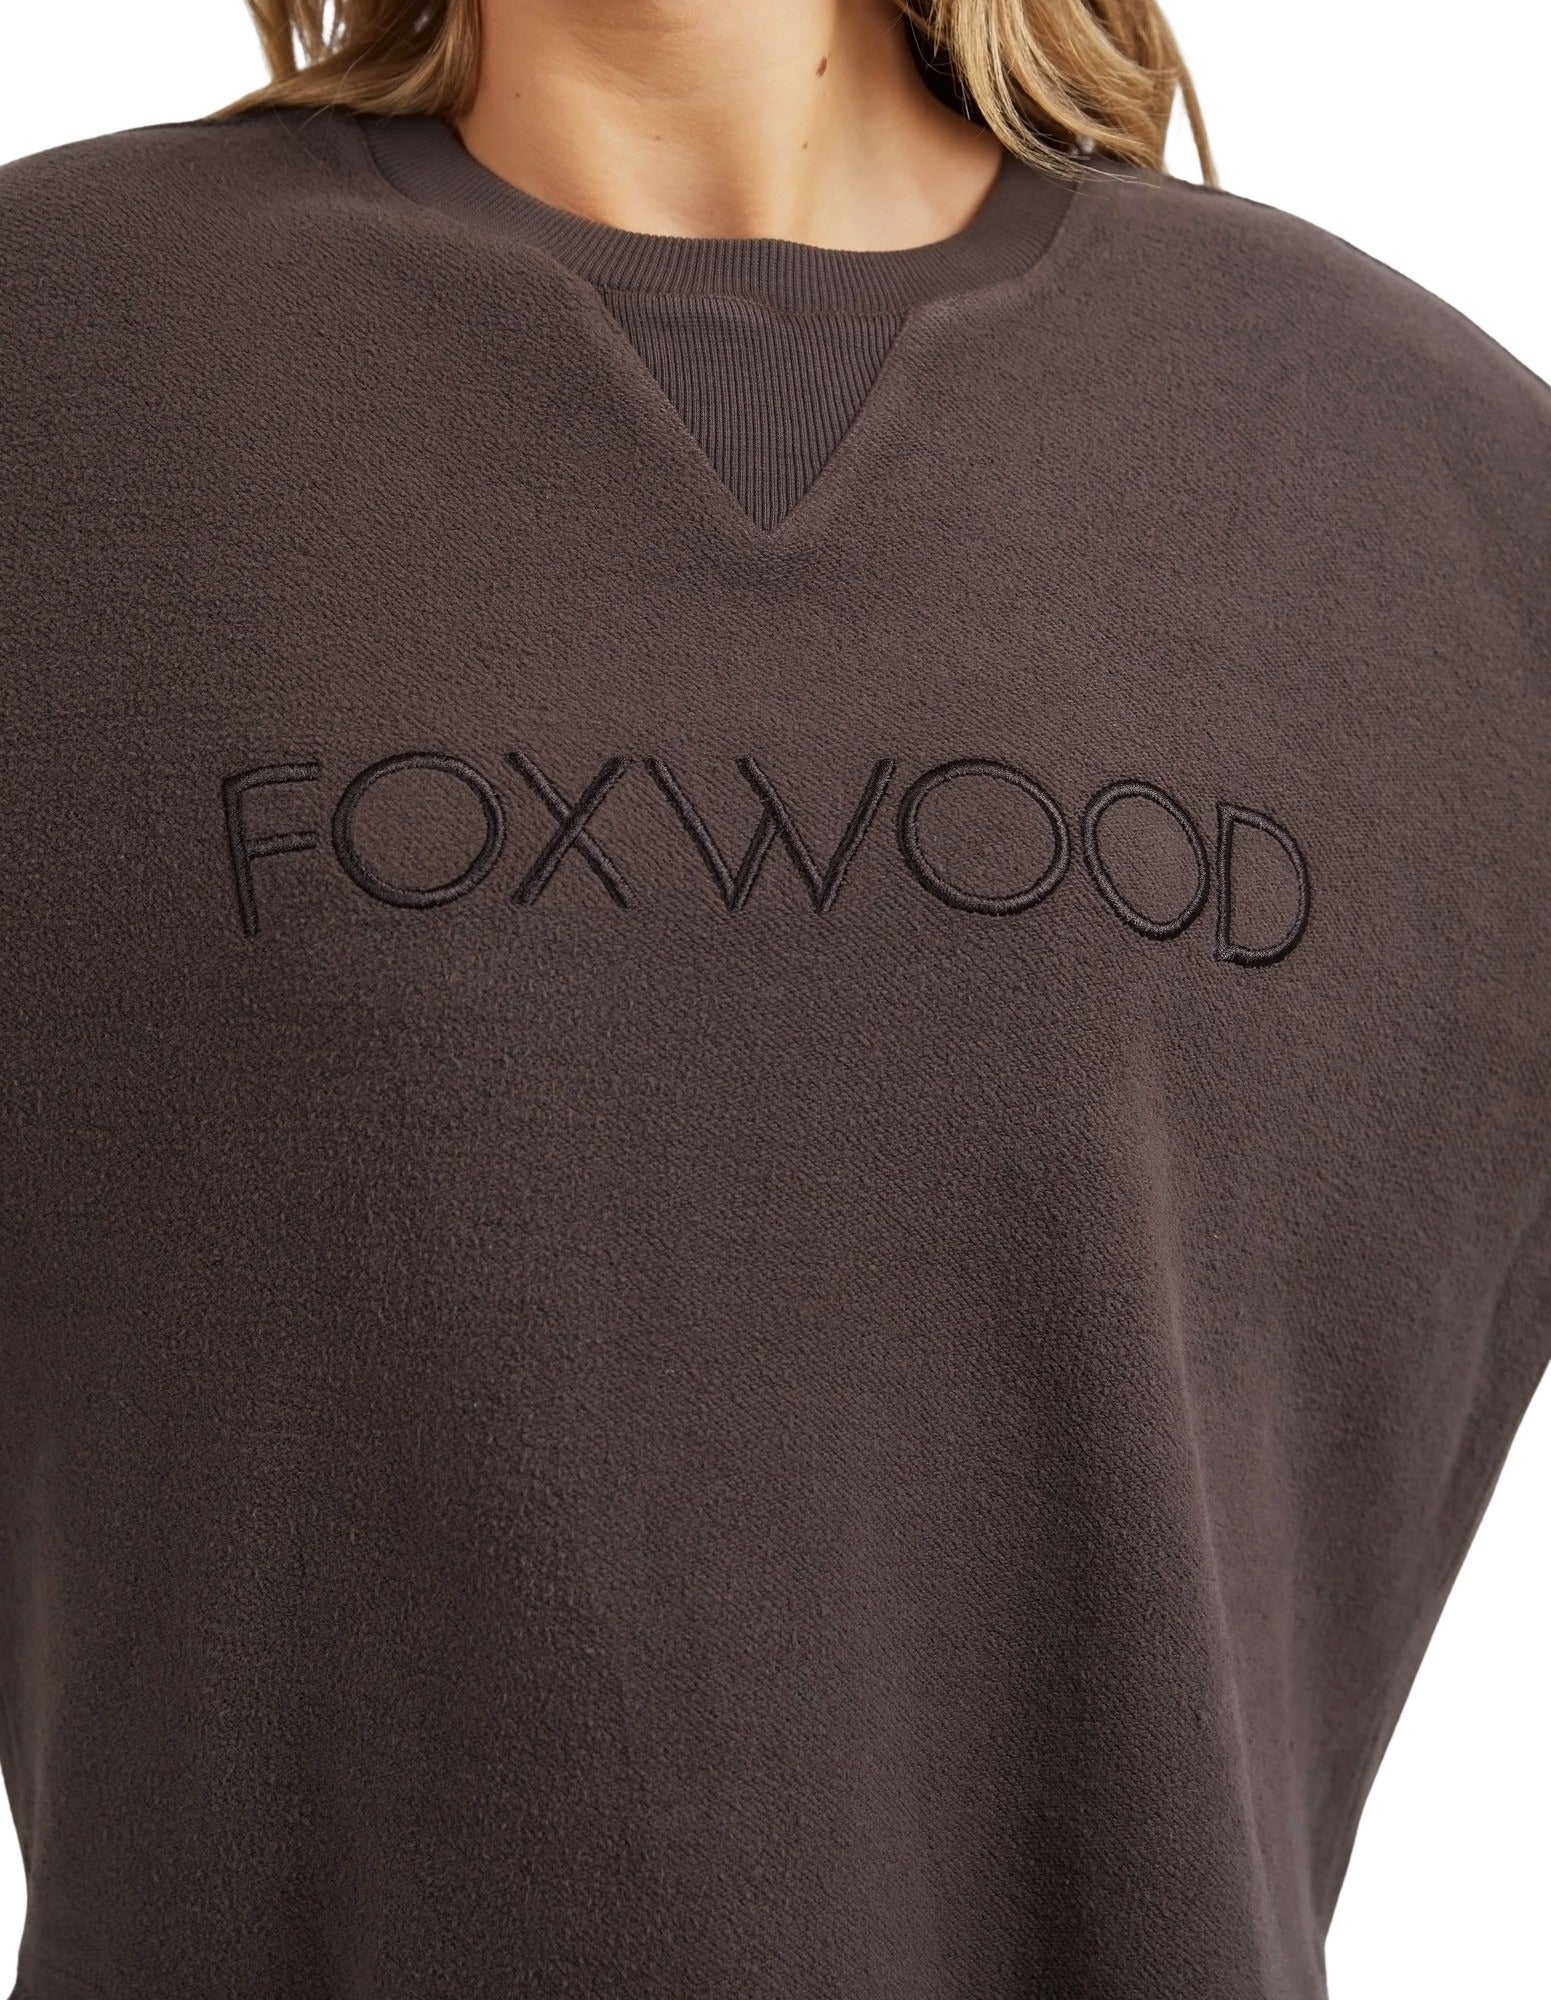 Foxwood Cozy Simplified Crew - Chocolate